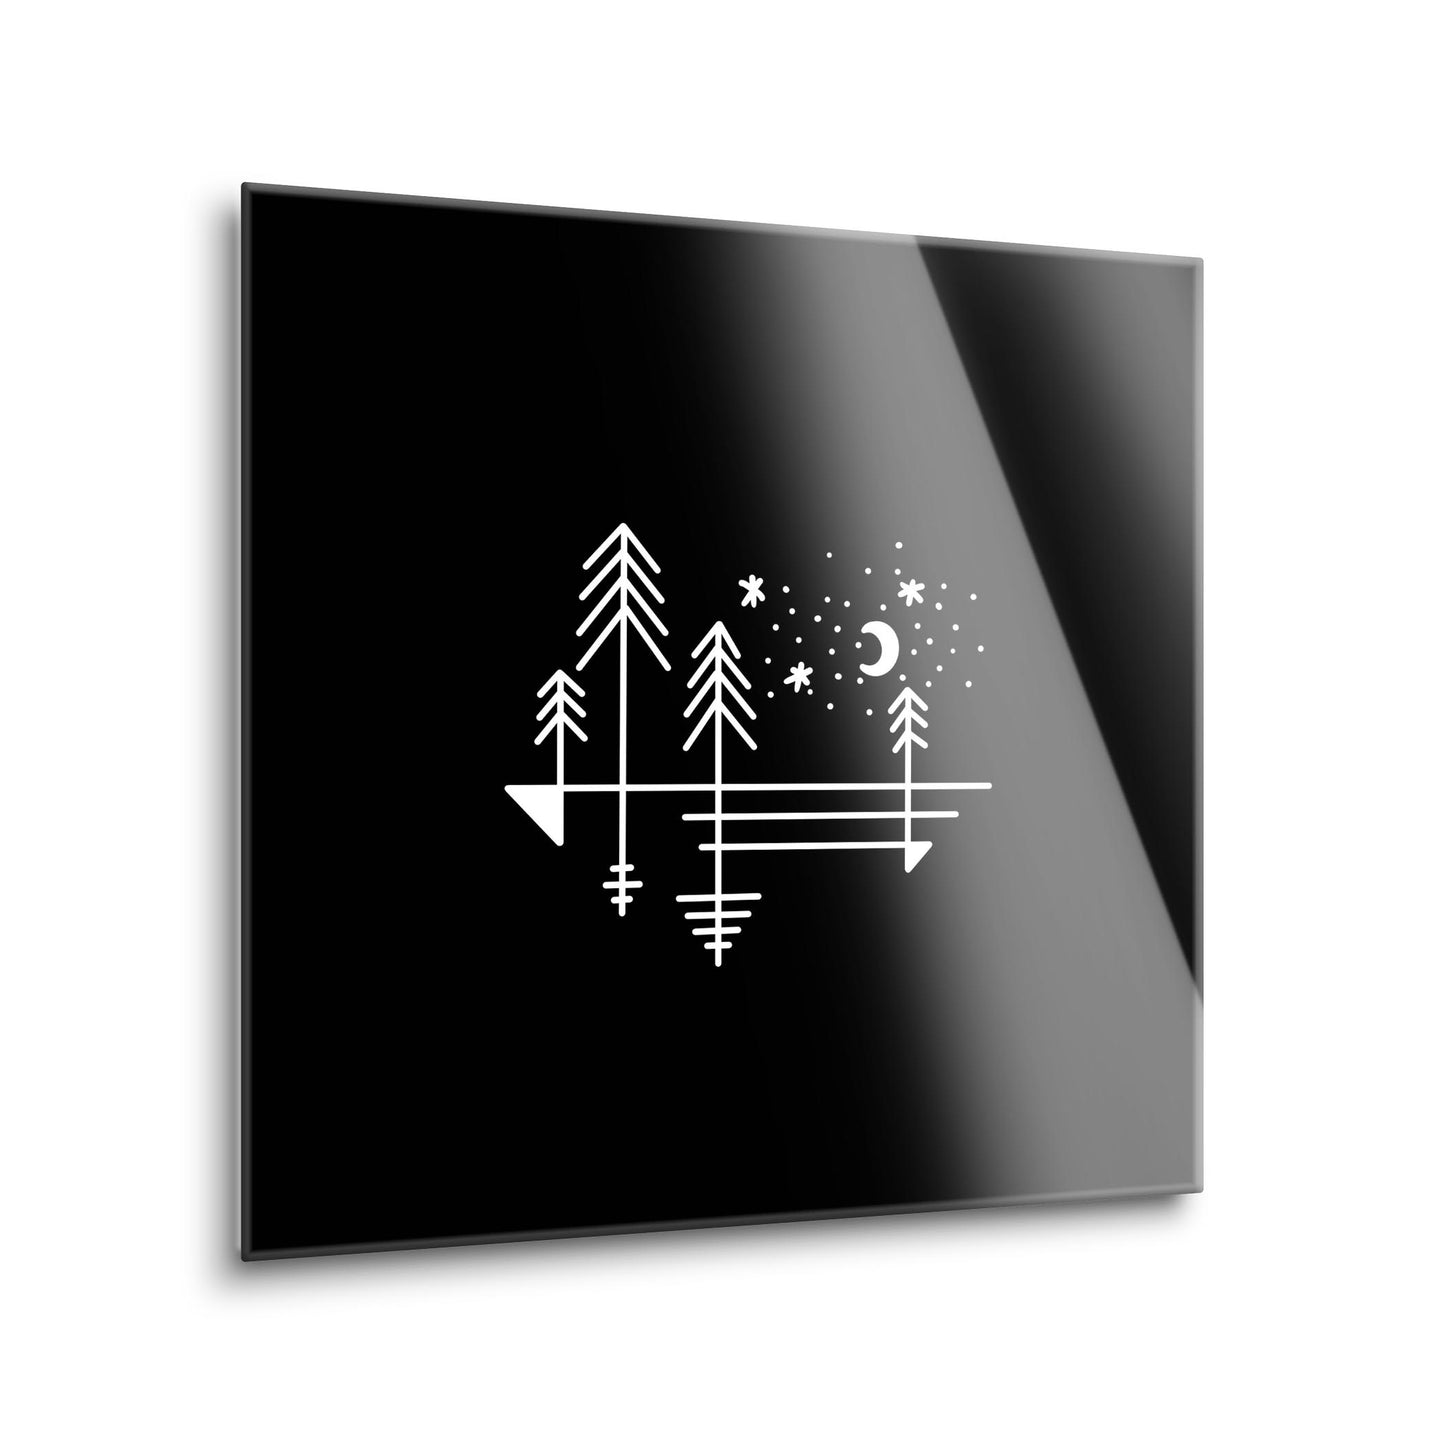 Minimalistic Tree Line Drawing On Black | Hi-Def Glass Art | Eaches | Min 1